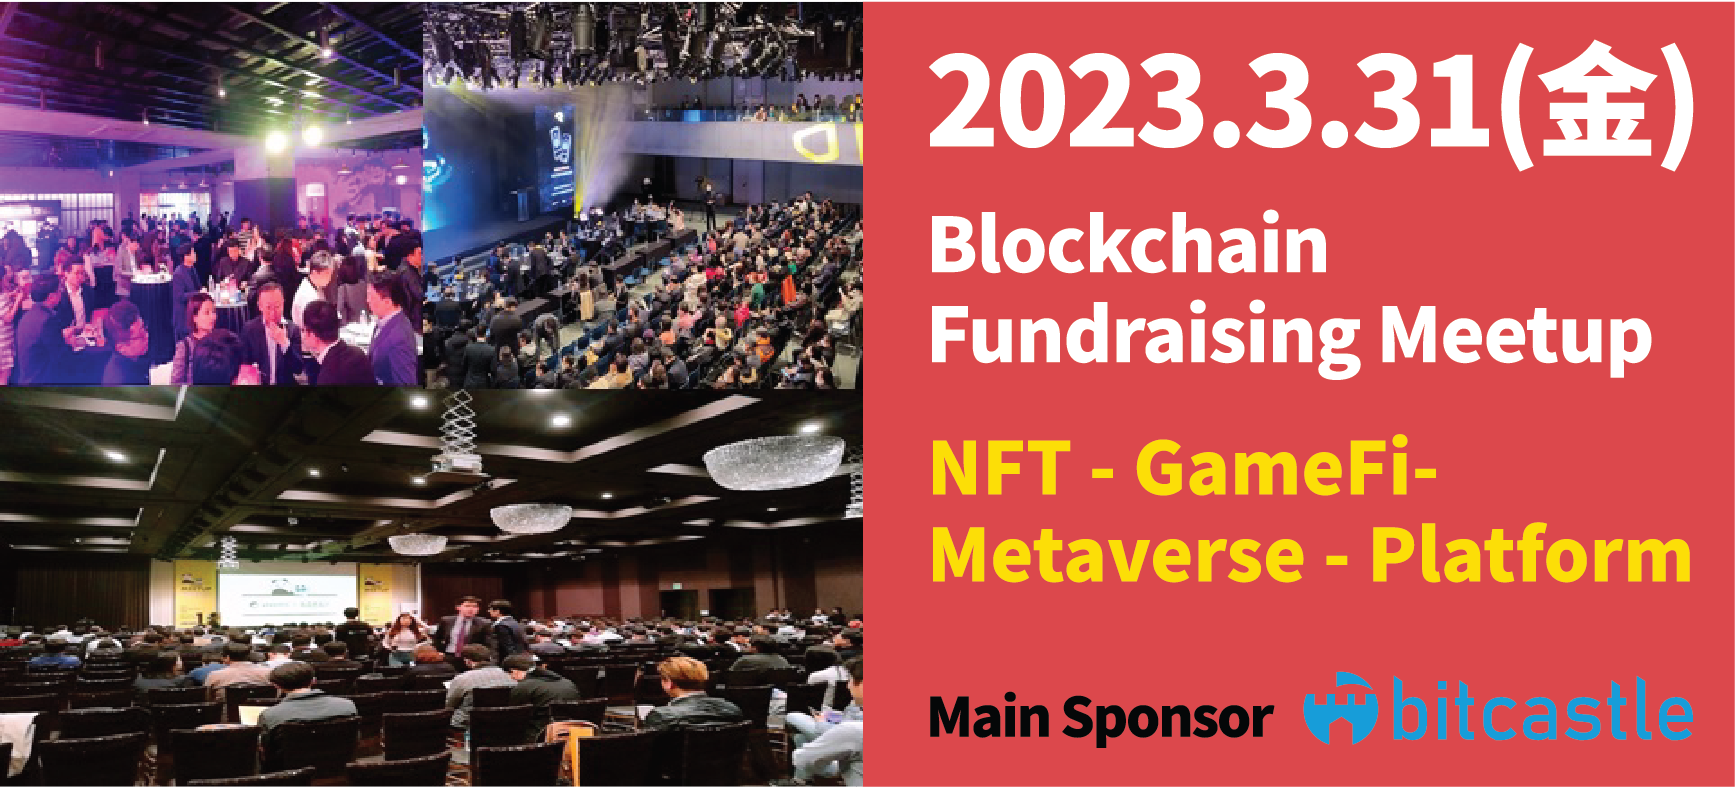 韓国から最先端Web3企業が来日！ブロックチェーン関係者や
個人投資家向け「Blockchain Fundraising Meetup」を
2023年3月31日(金) 東京で開催